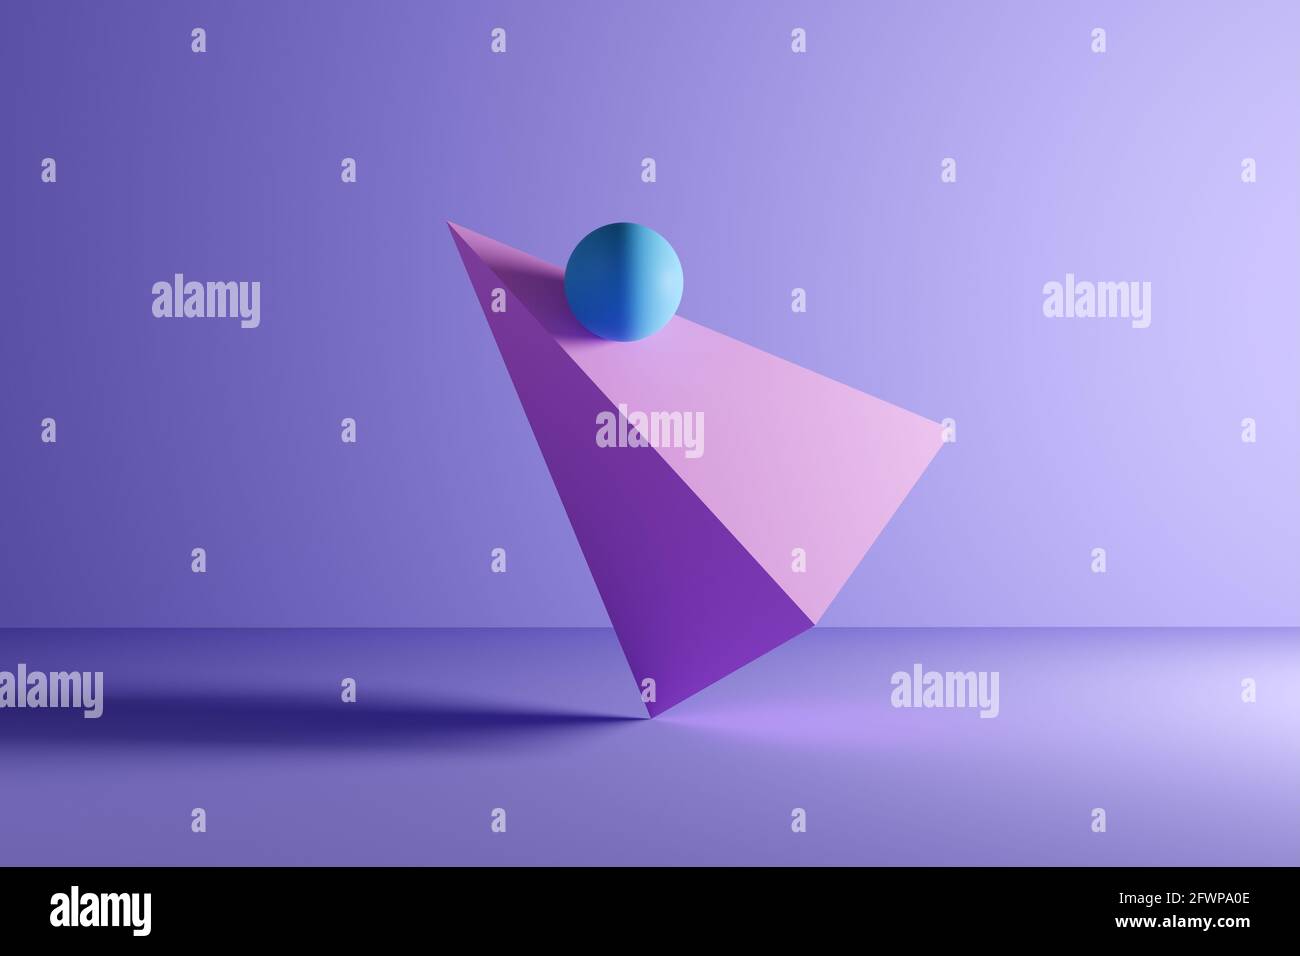 Sfera o sfera in equilibrio su un prisma piramidale rotante forma geometrica su sfondo viola. Illustrazione di sfondo 3D astratta. Foto Stock